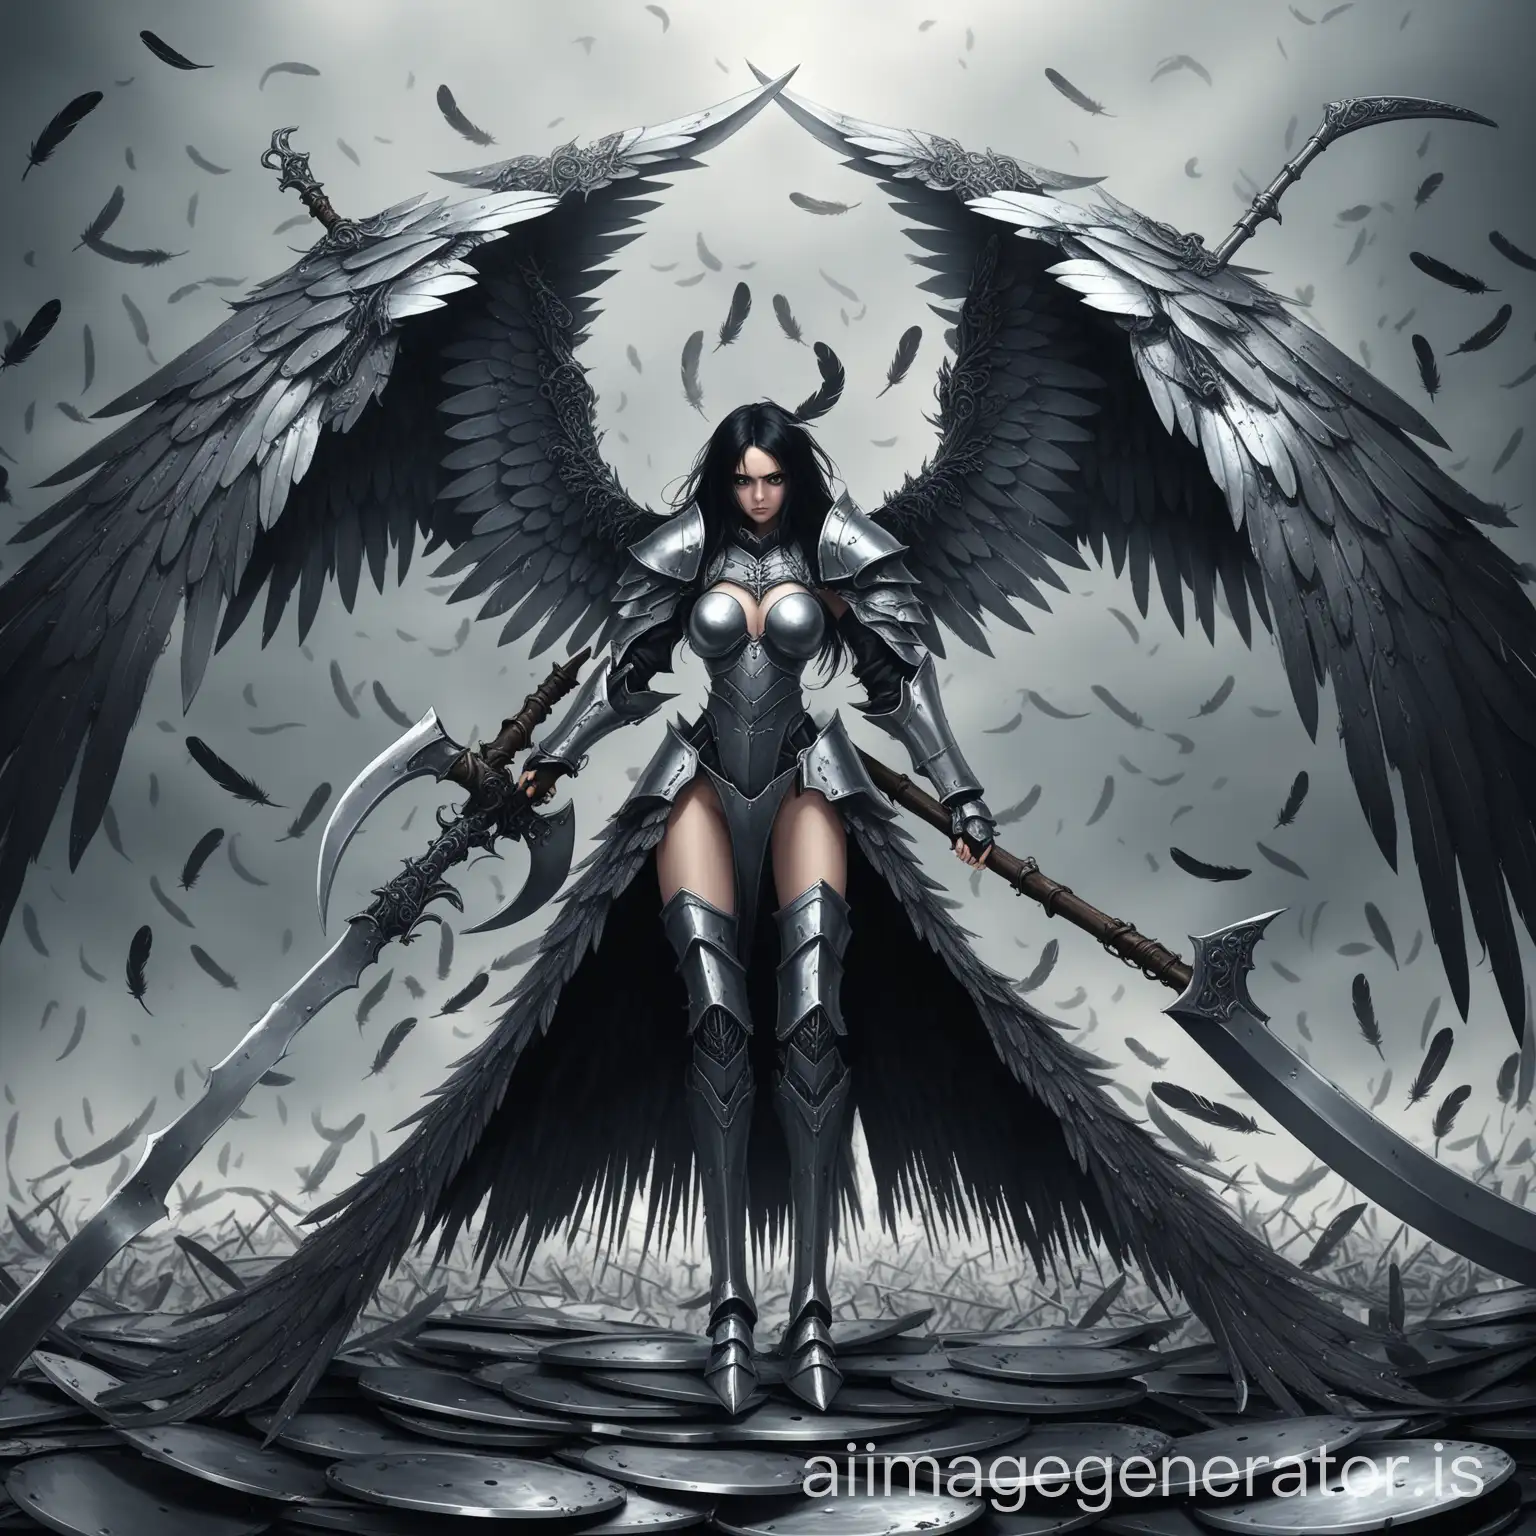 ведьма в стальных доспехах, жестокое лицо, холодный взгляд, женщина в стальных латах, стальные крылья, крылья из металла, перья на крыльях из длинных пластин железа, железная боевая коса, чёрные волосы, в полный рост